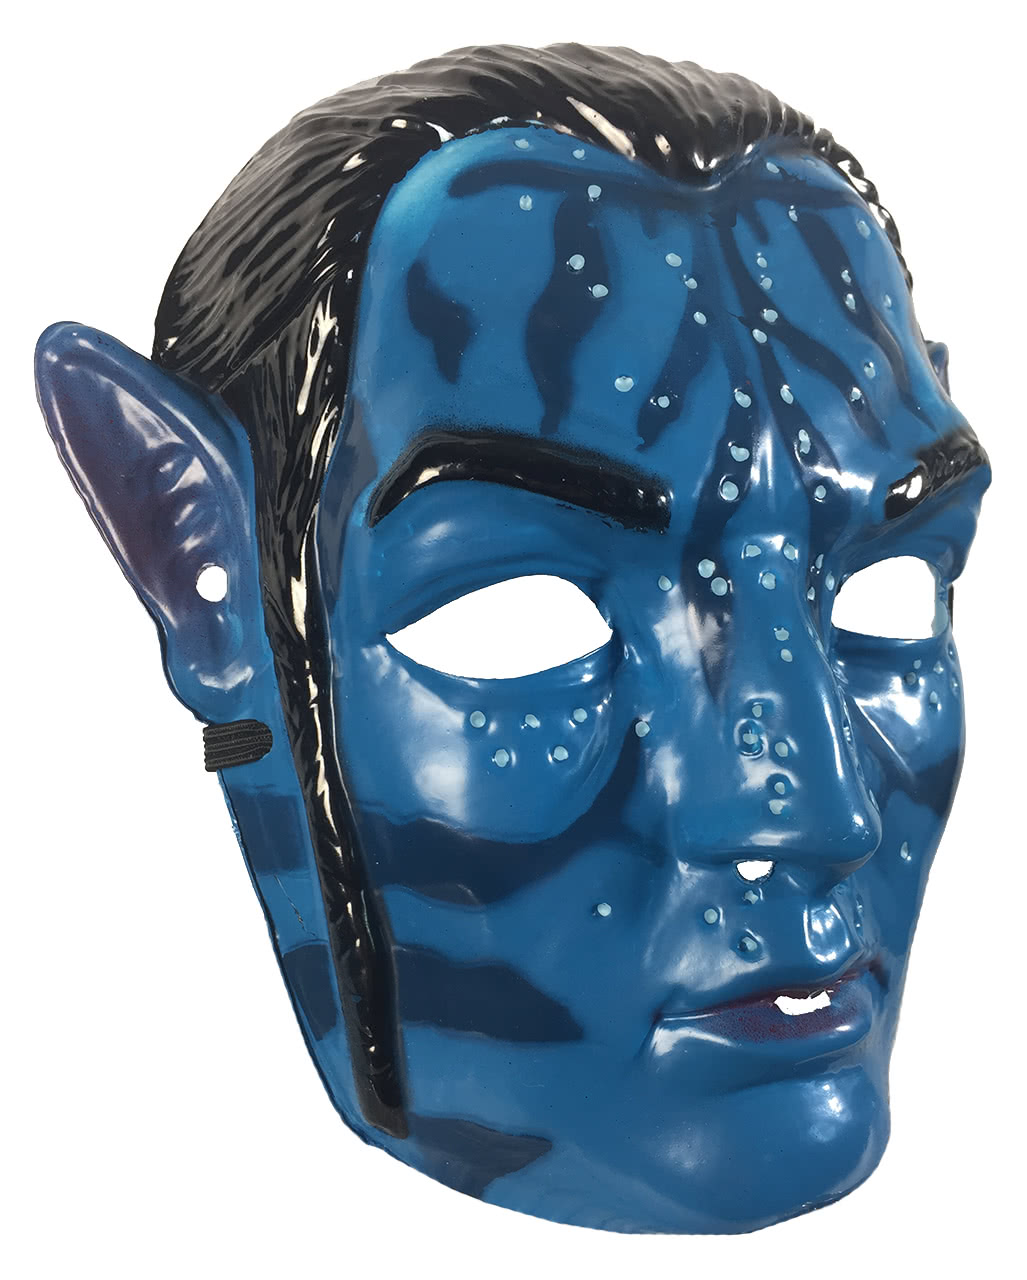 Avatar Mask 2724cm Jotzsl044  China Helmets and Masks price   MadeinChinacom